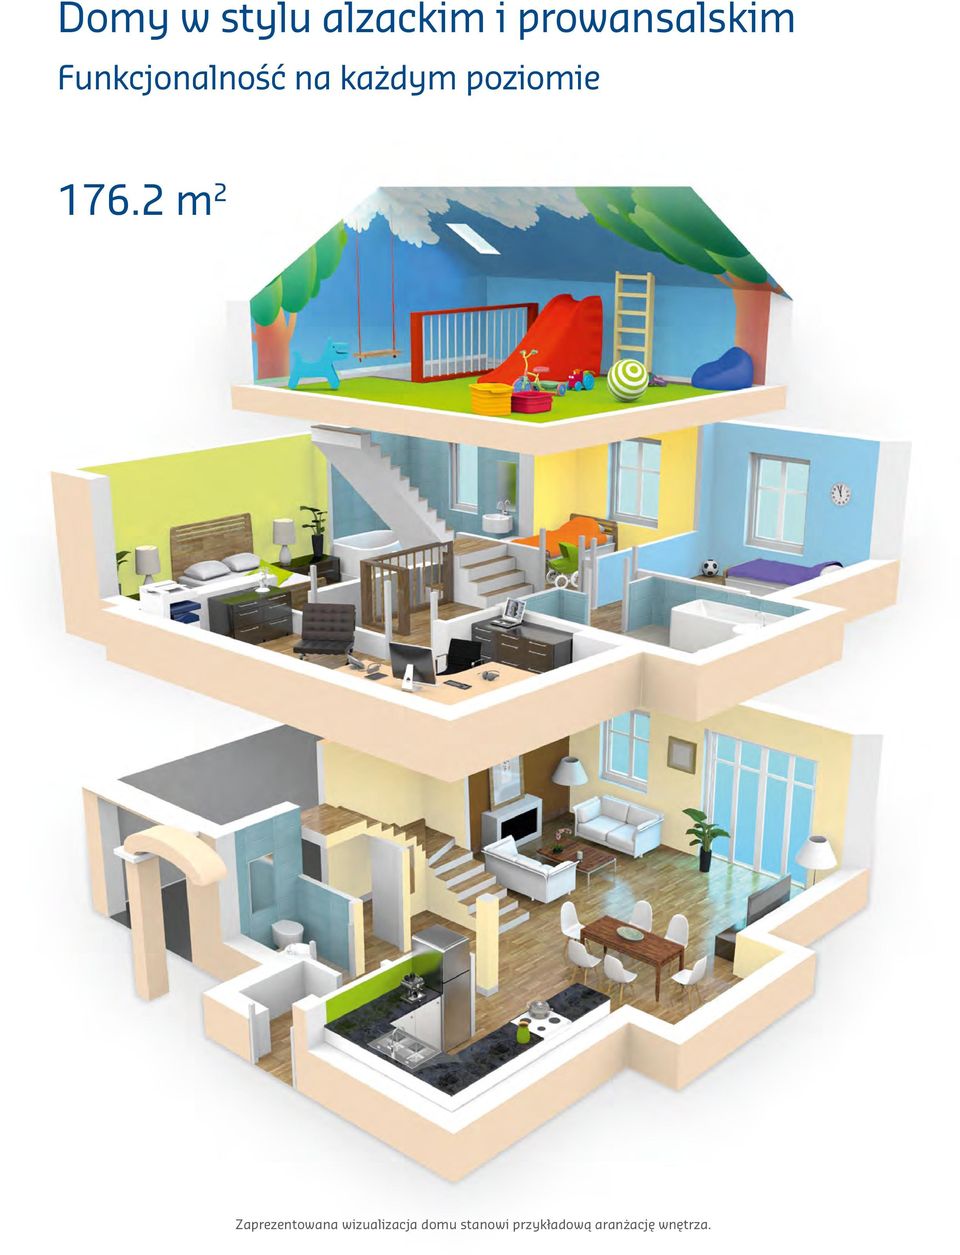 2 m 2 Zaprezentowana wizualizacja domu